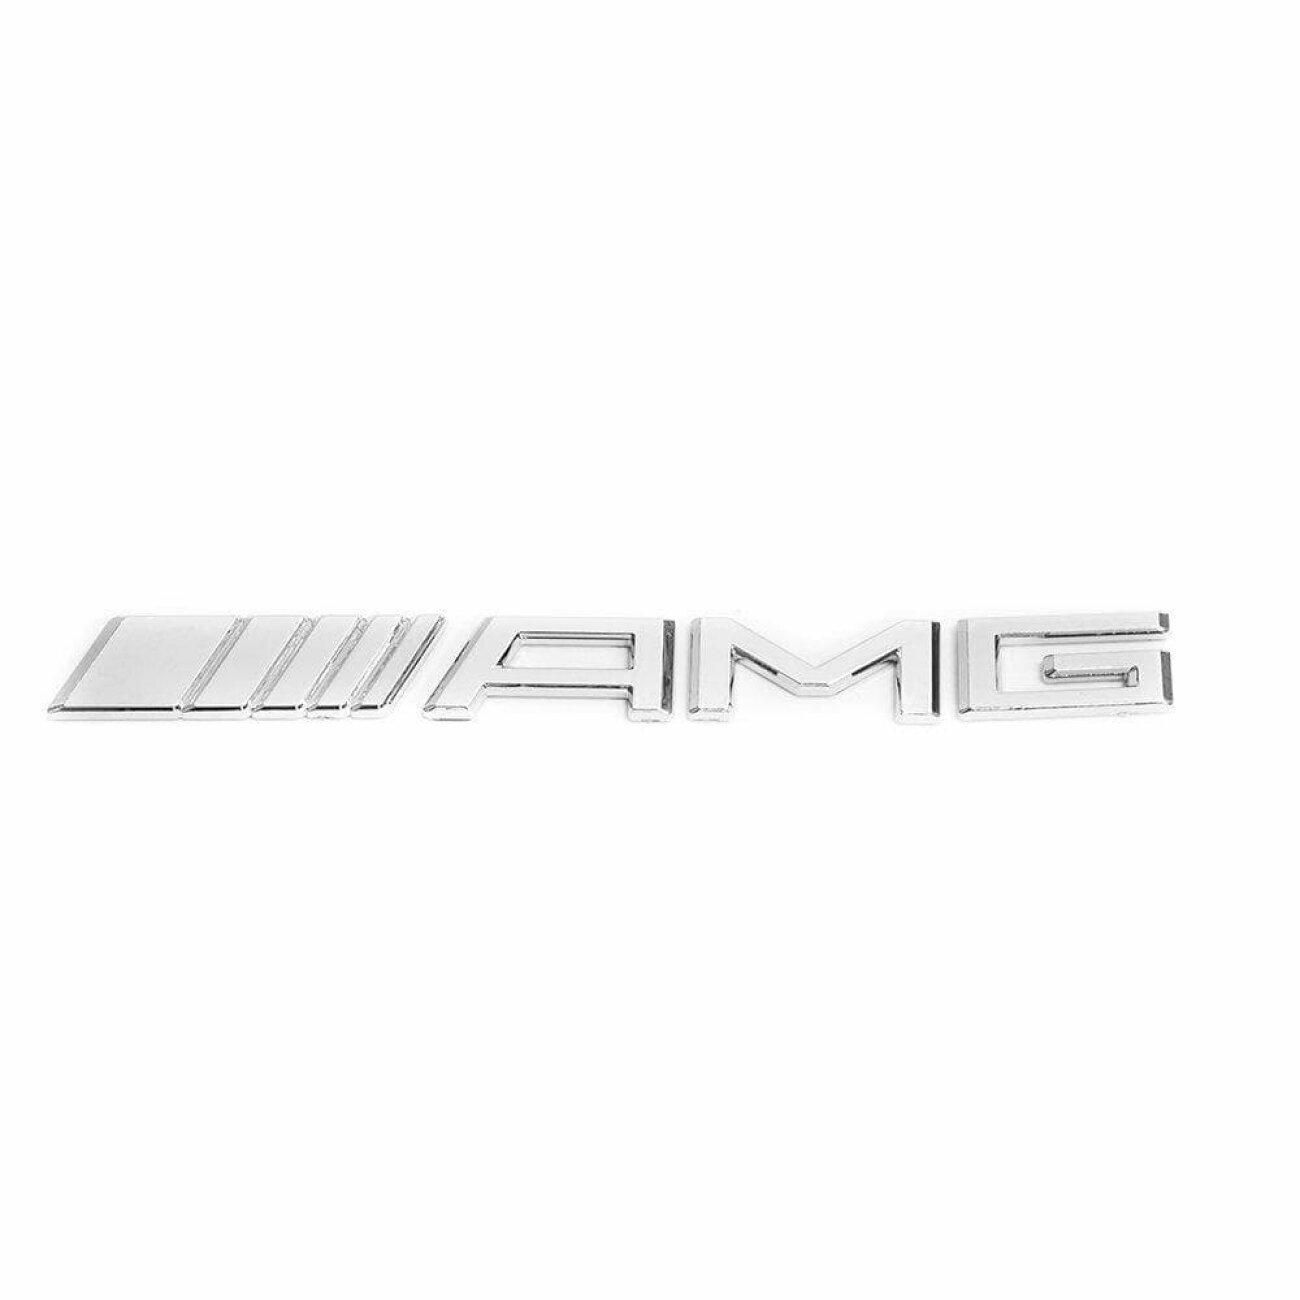 Шильдик на багажник AMG для Mercedes-Benz хром образец 2011-2017 г.